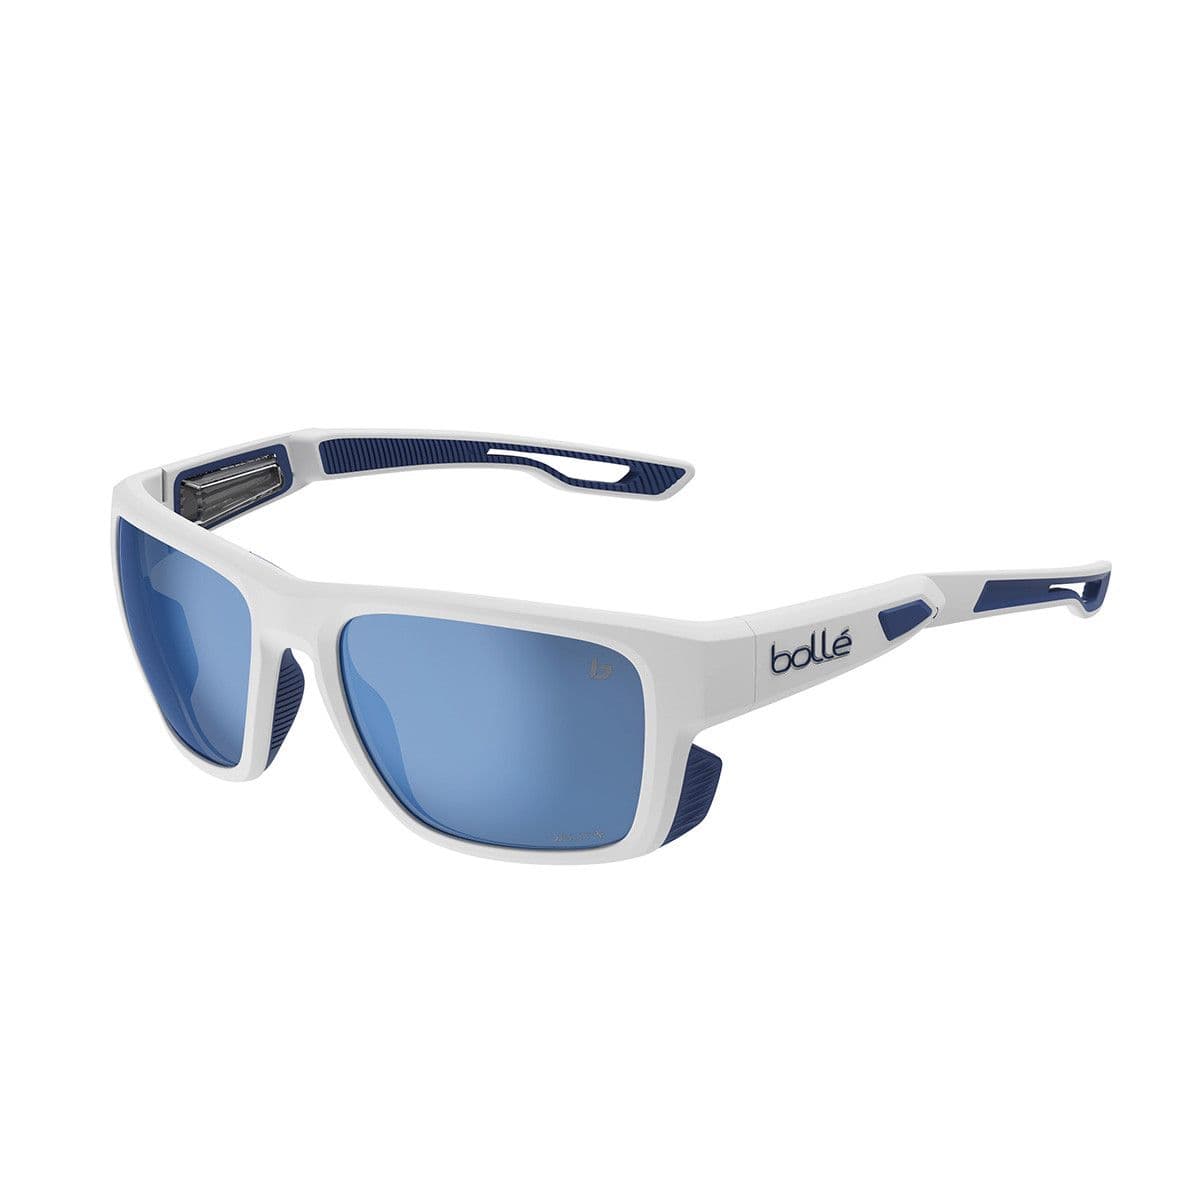 Bolle Airdrift Sunglasses